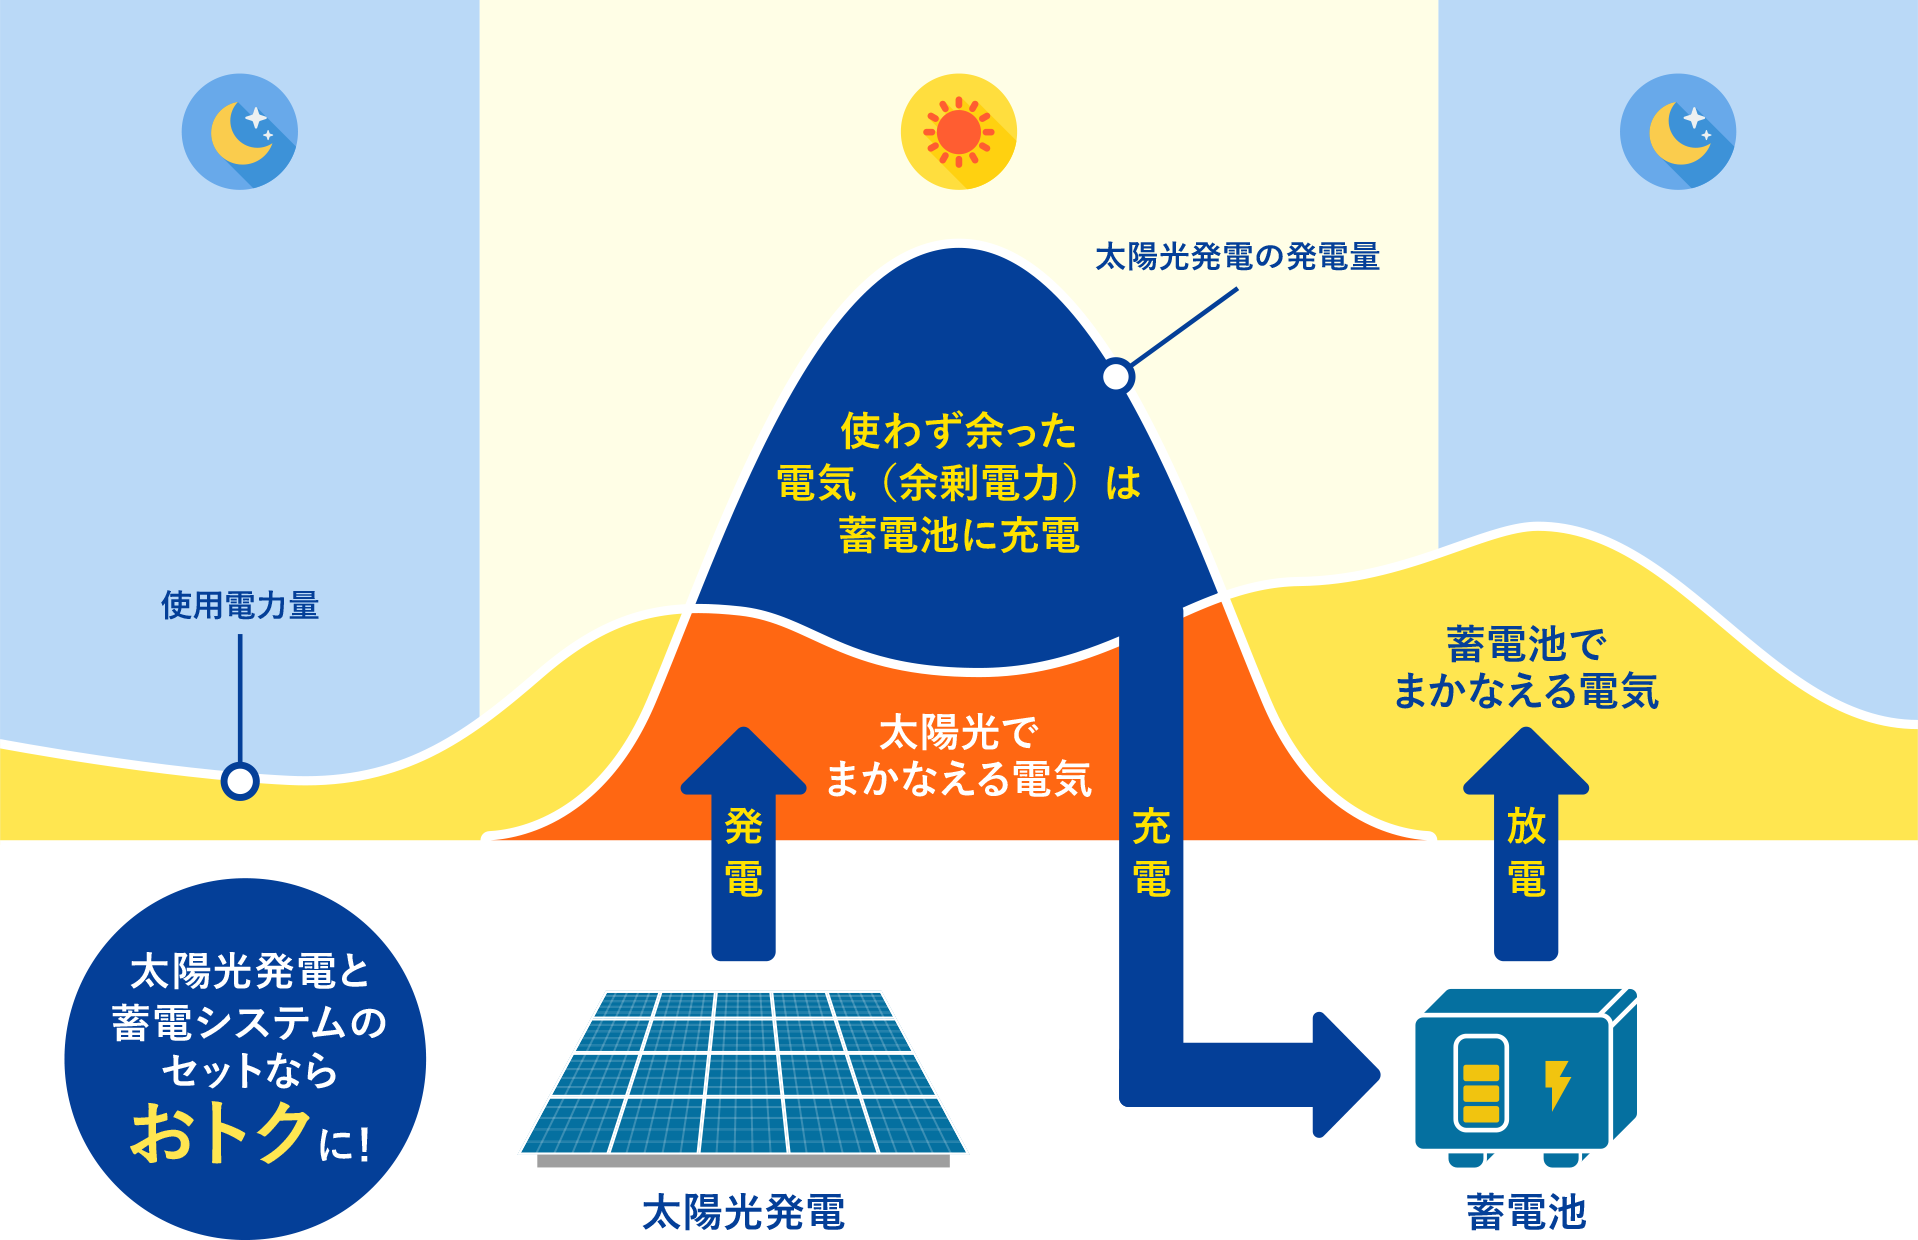 太陽光発電システムと蓄電池とあわせた「自家消費モデル」の説明図